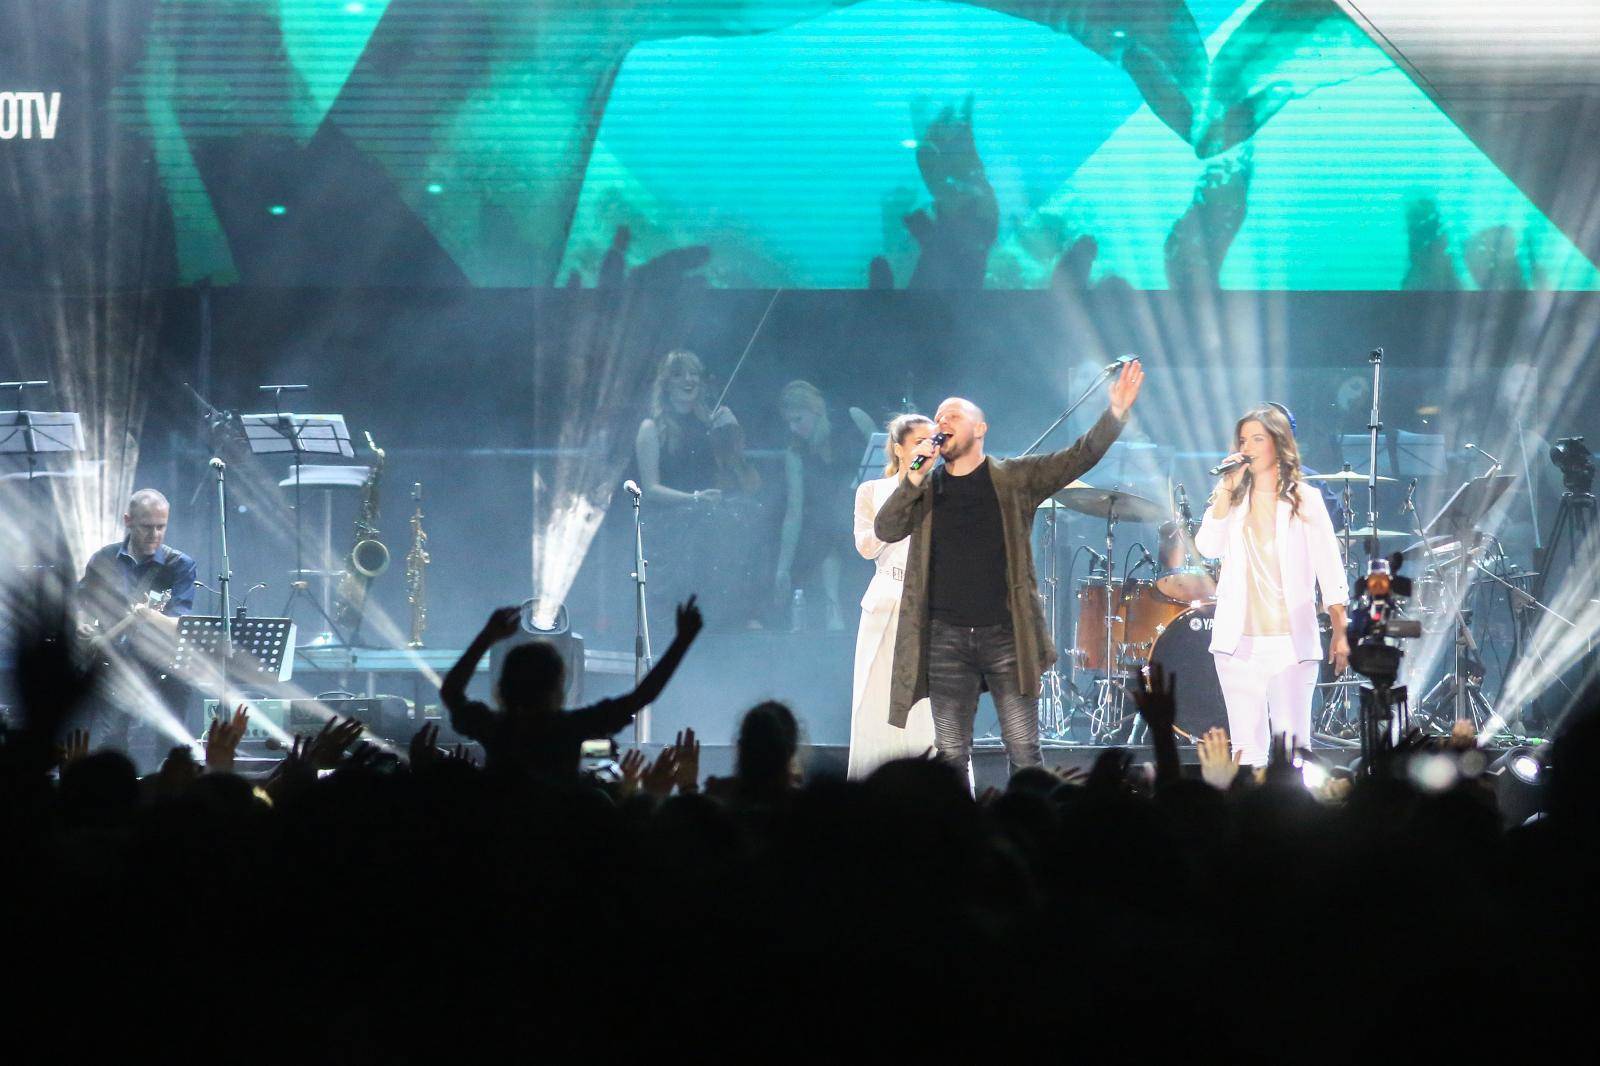 Jim Caviezel iz hit filma 'Pasija' stiže u zagrebačku Arenu na veliki koncert duhovne glazbe